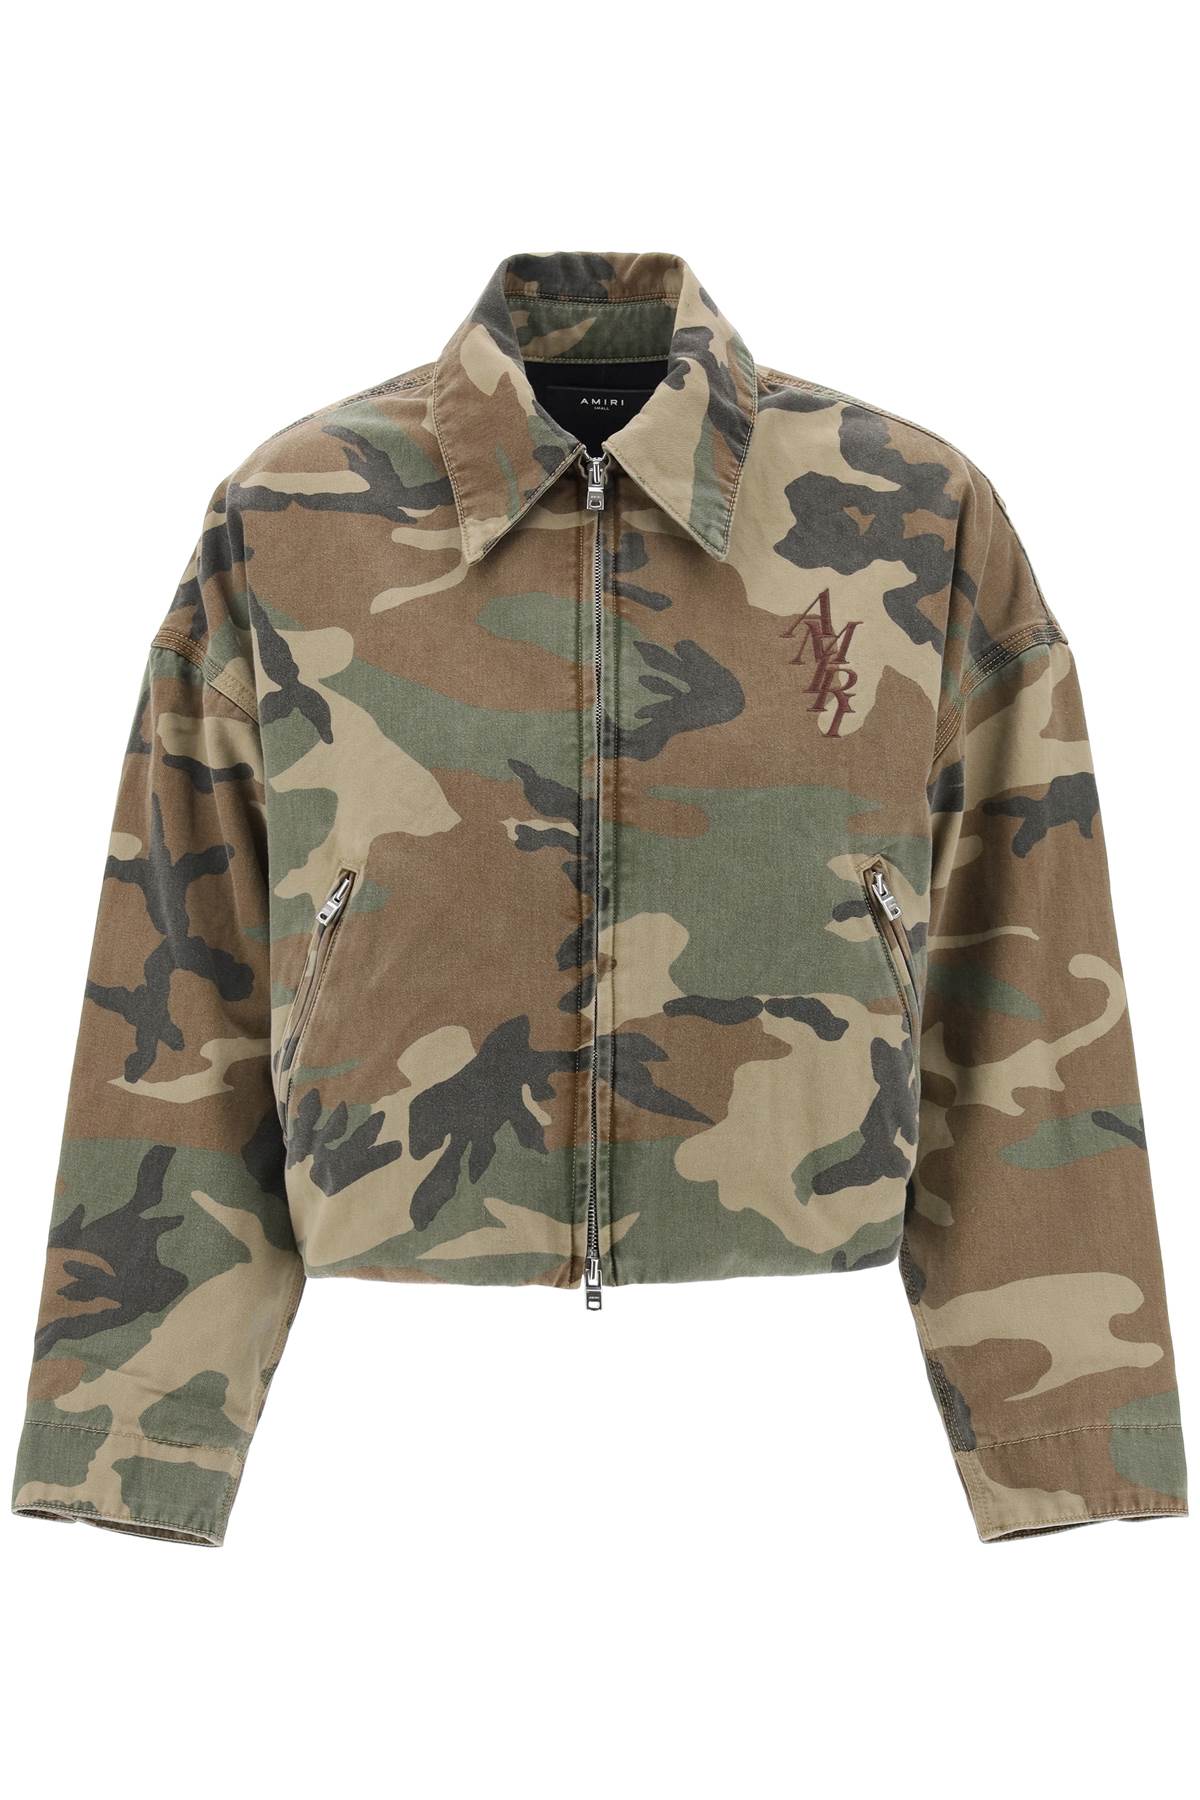 Amiri "workwear style camouflage jacket-0